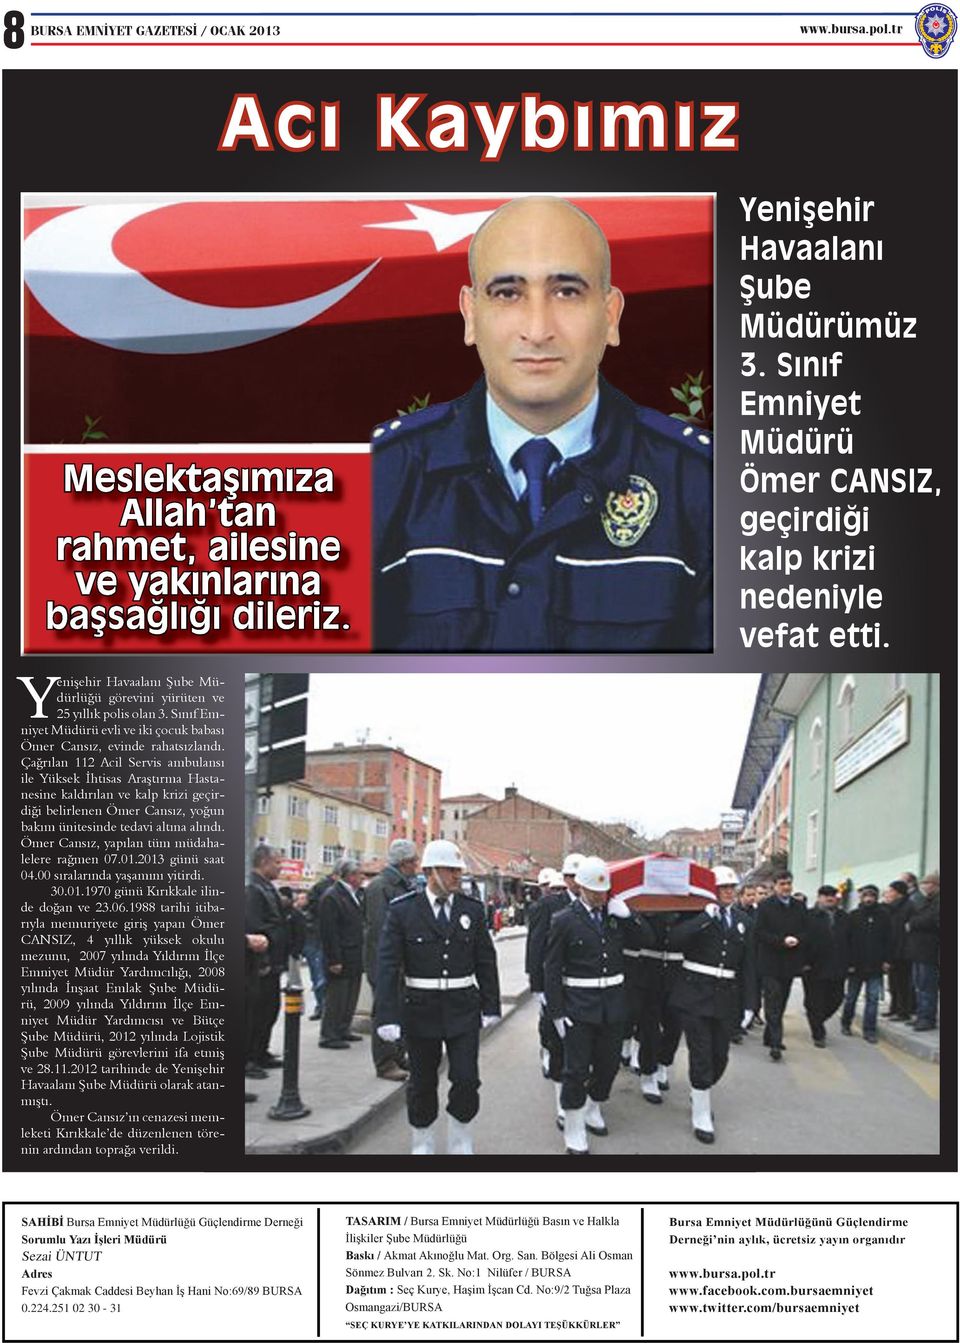 Çağrılan 112 Acil Servis ambulansı ile Yüksek İhtisas Araştırma Hastanesine kaldırılan ve kalp krizi geçirdiği belirlenen Ömer Cansız, yoğun bakım ünitesinde tedavi altına alındı.